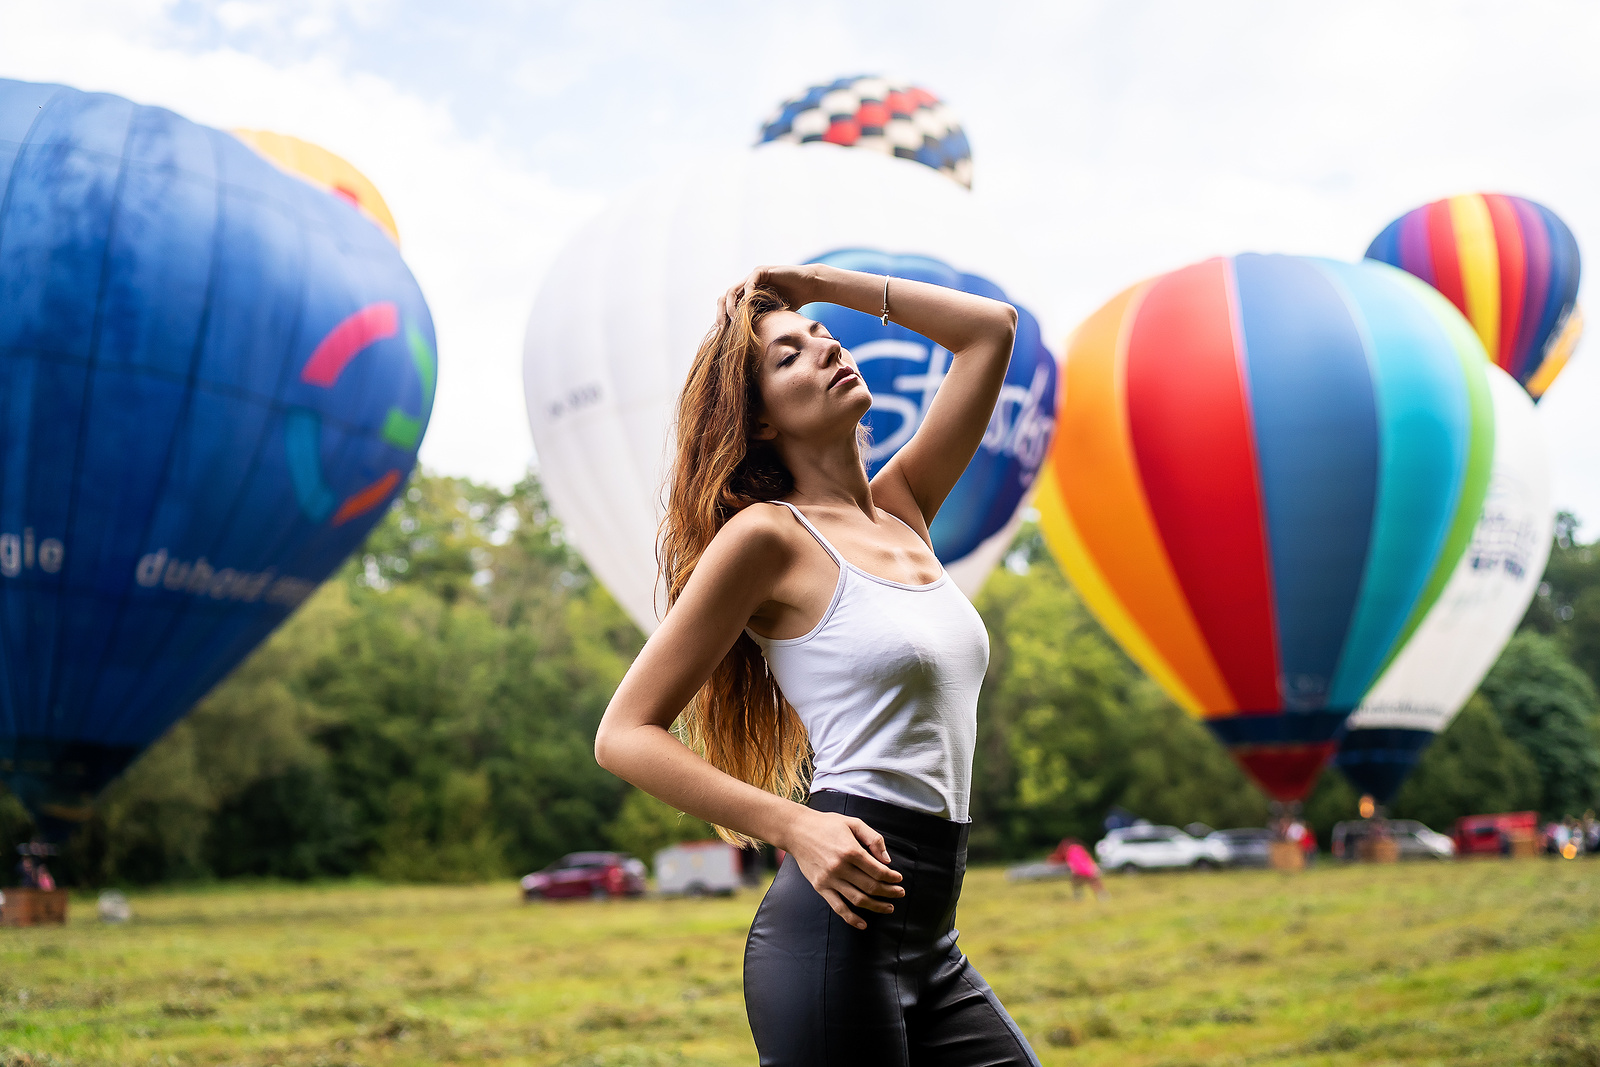 FOTO: Fiesta horkovzdušných balónů - Náchodský deník